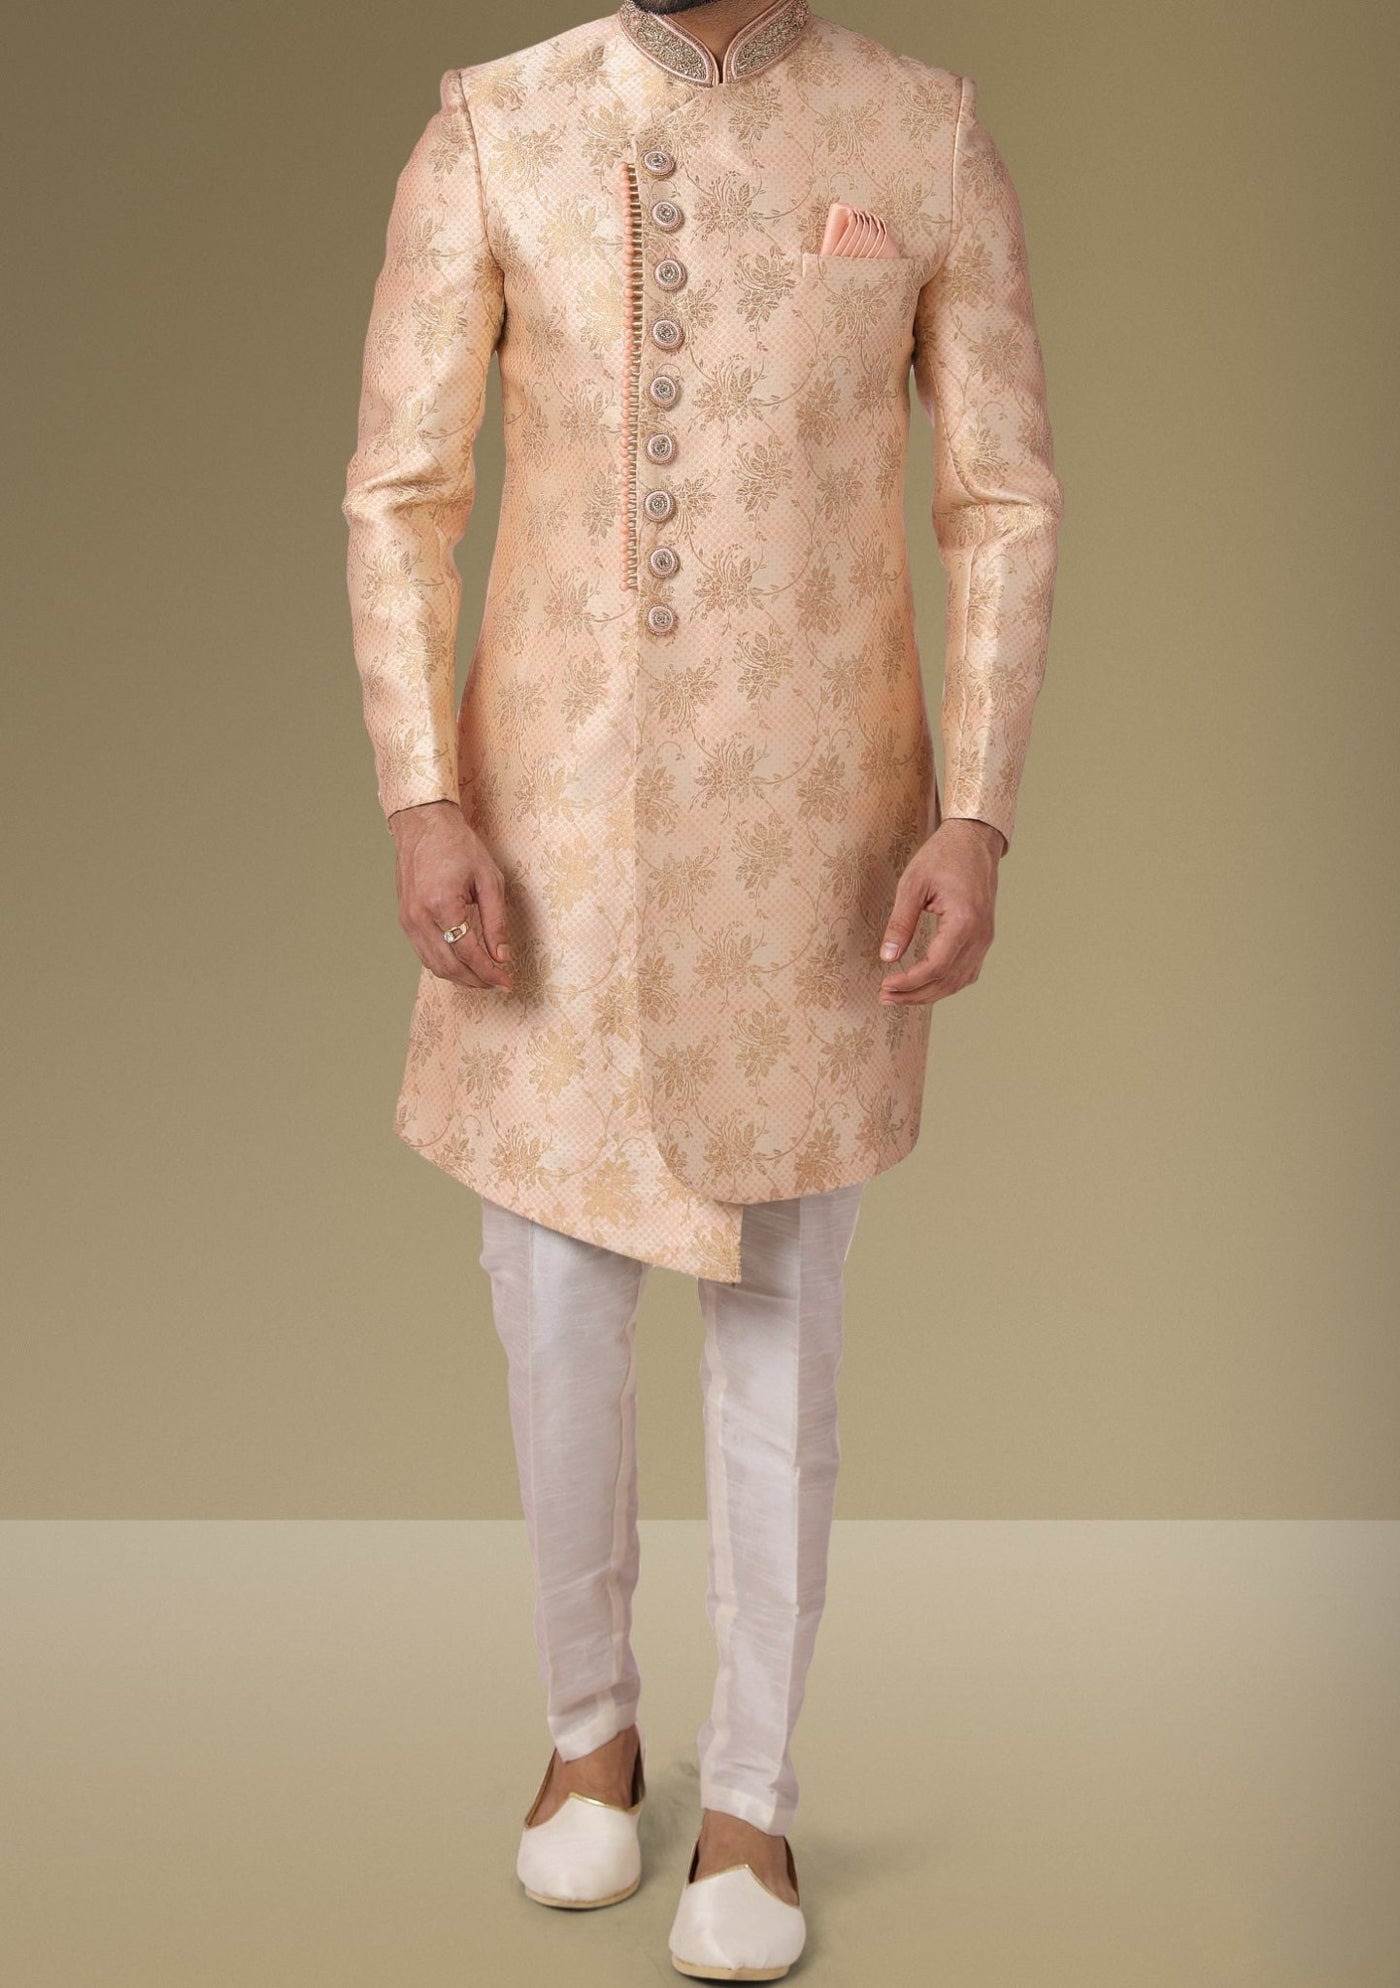 Men's Indo Western Party Wear Sherwani Suit - db18070